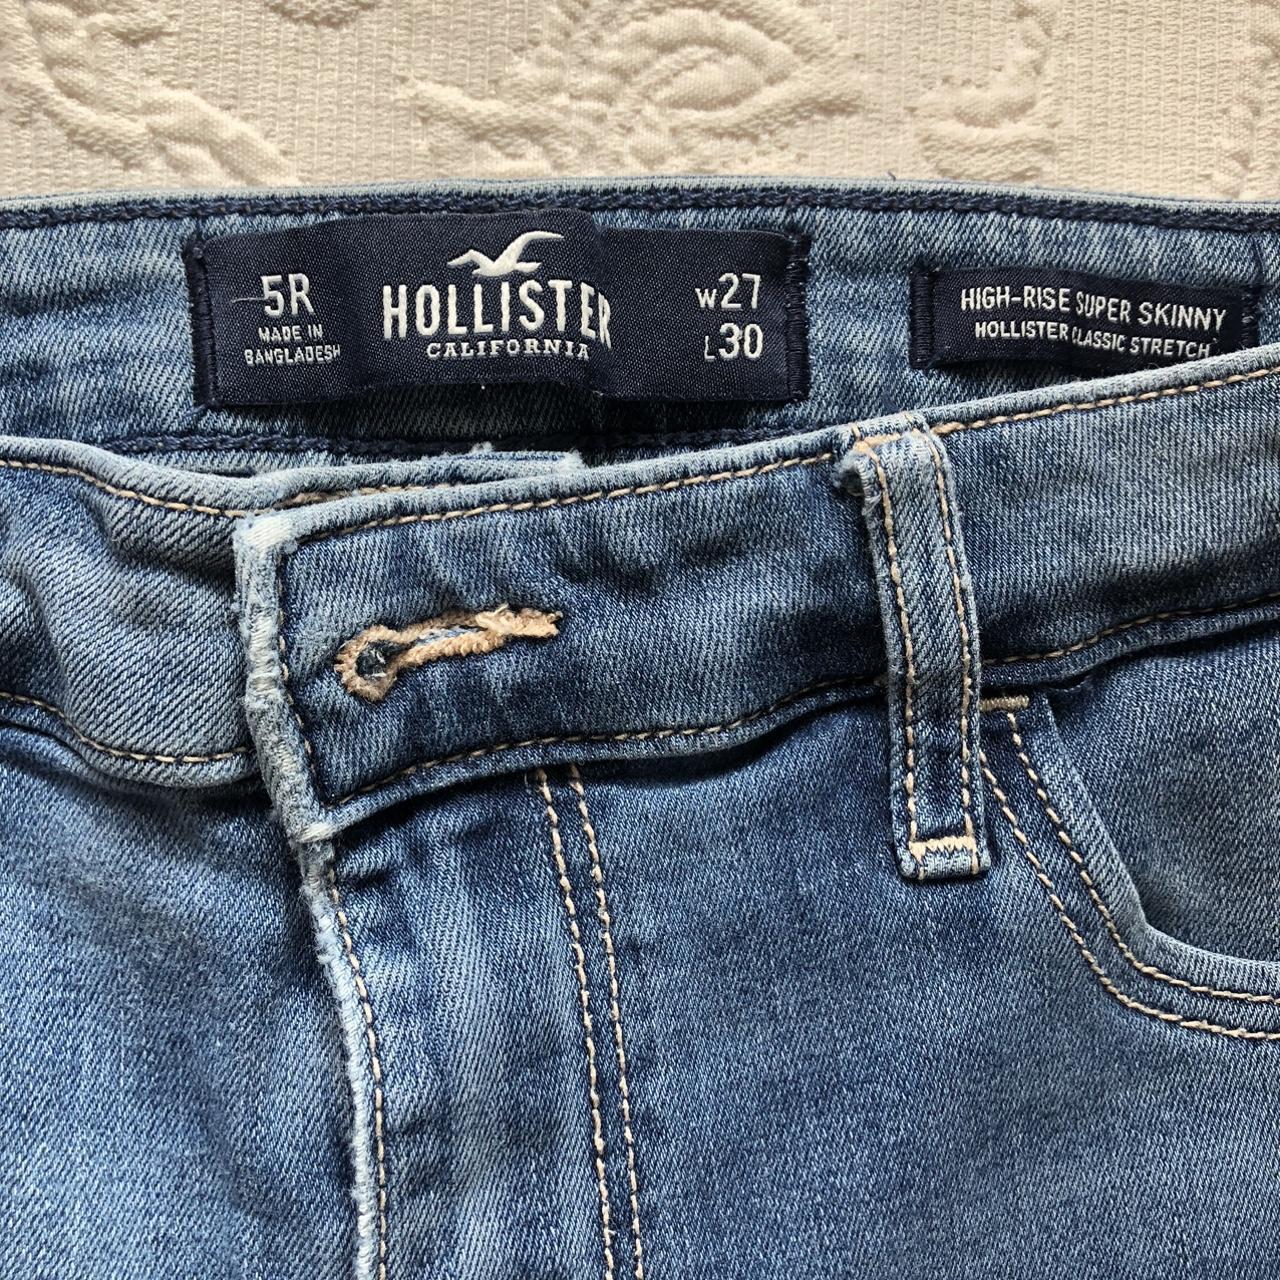 Hollister Jeans Size 5R Hollister Super Skinny High - Depop